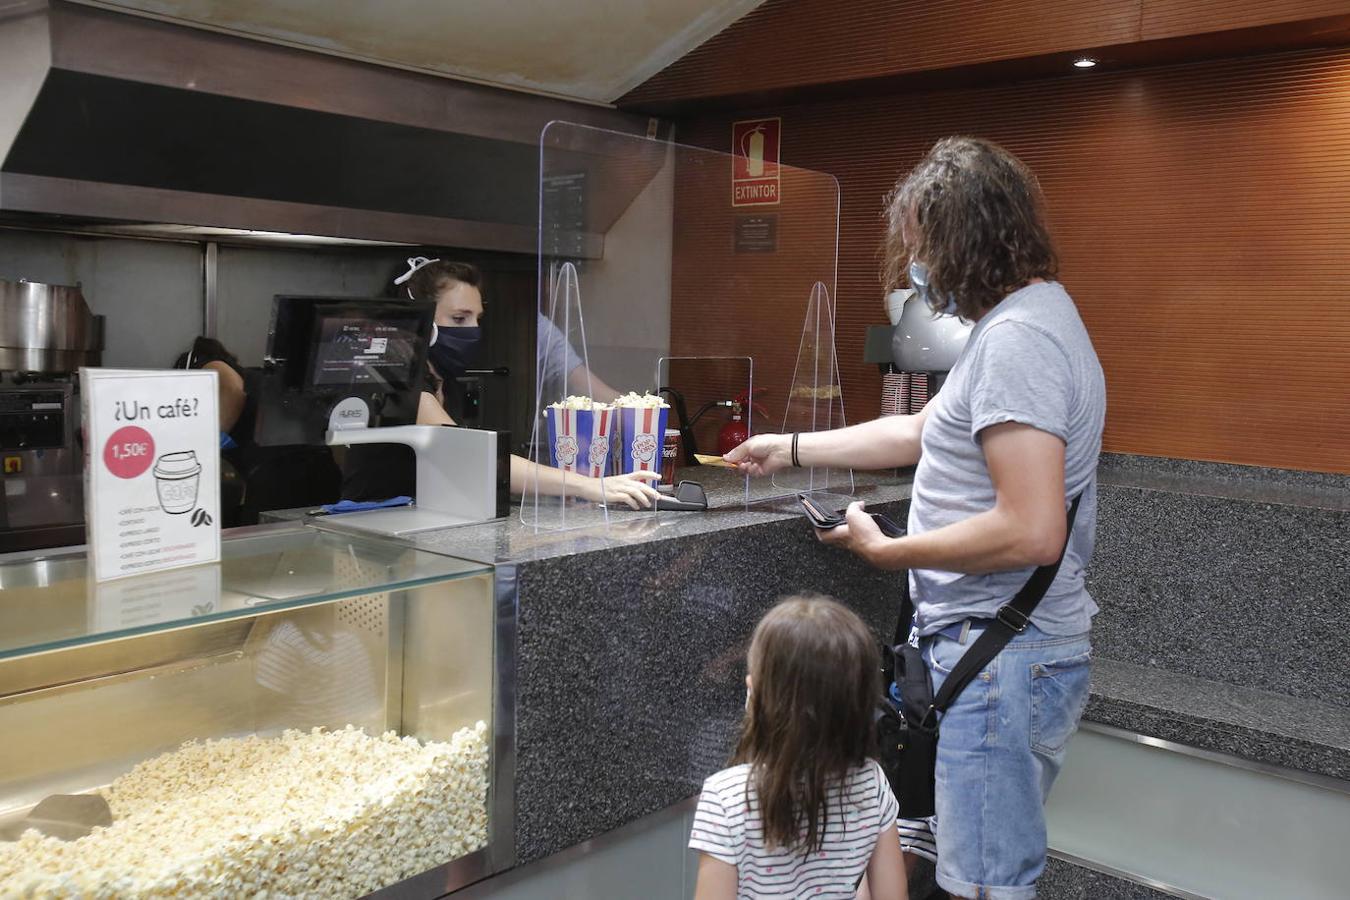 En imágenes, la reapertura de las salas de cine en Córdoba